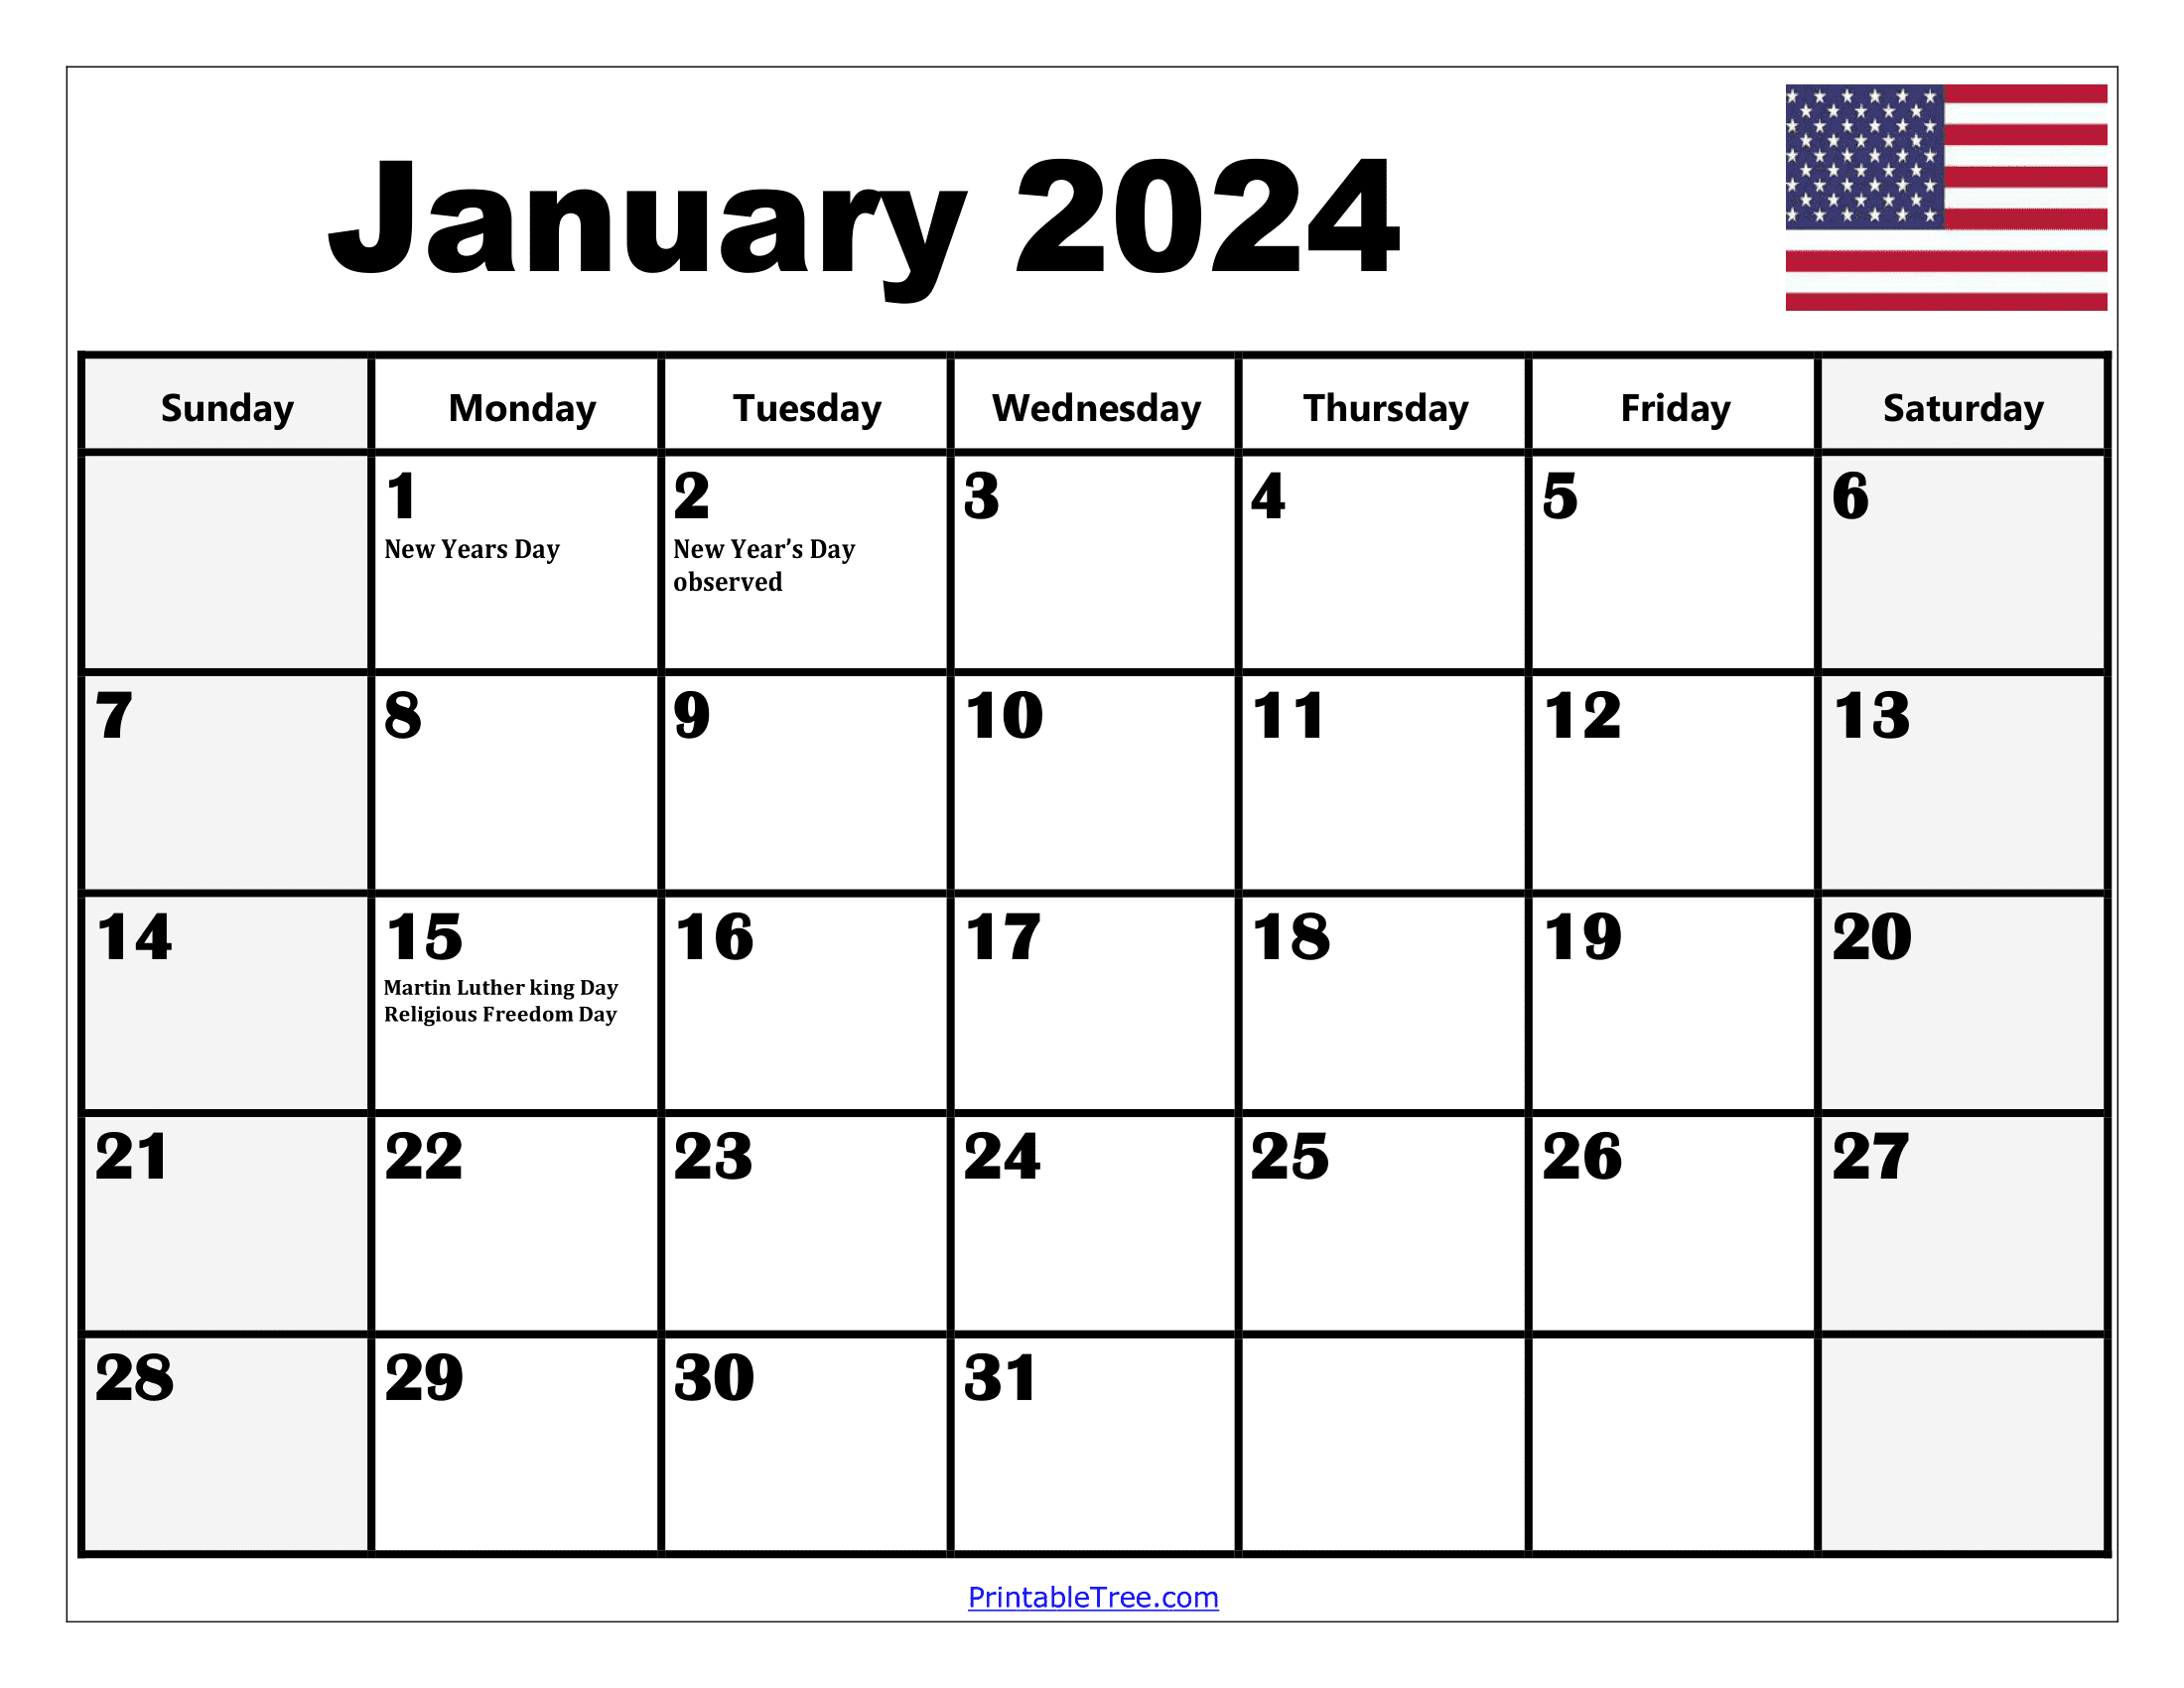 2024 Holiday Calendar Days Free Download Nov 2024 Calendar - Free Printable 2024 Calendar With Holidays Large Print